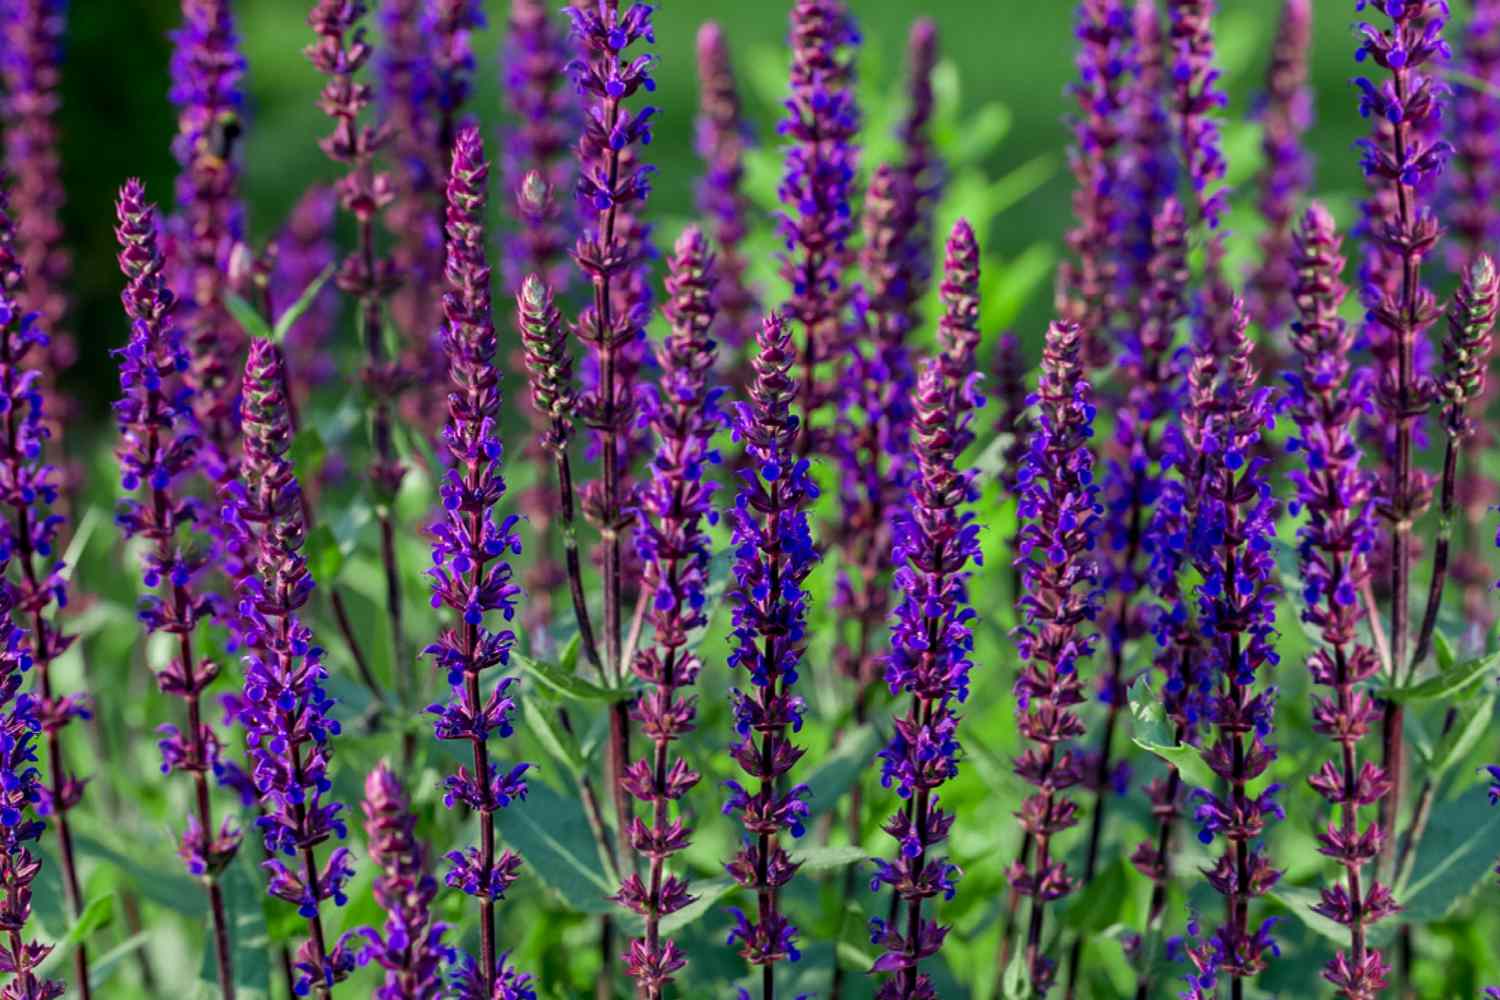 Caradonna salvia Pflanzen mit langen dünnen Stängeln und violetten Blütenähren